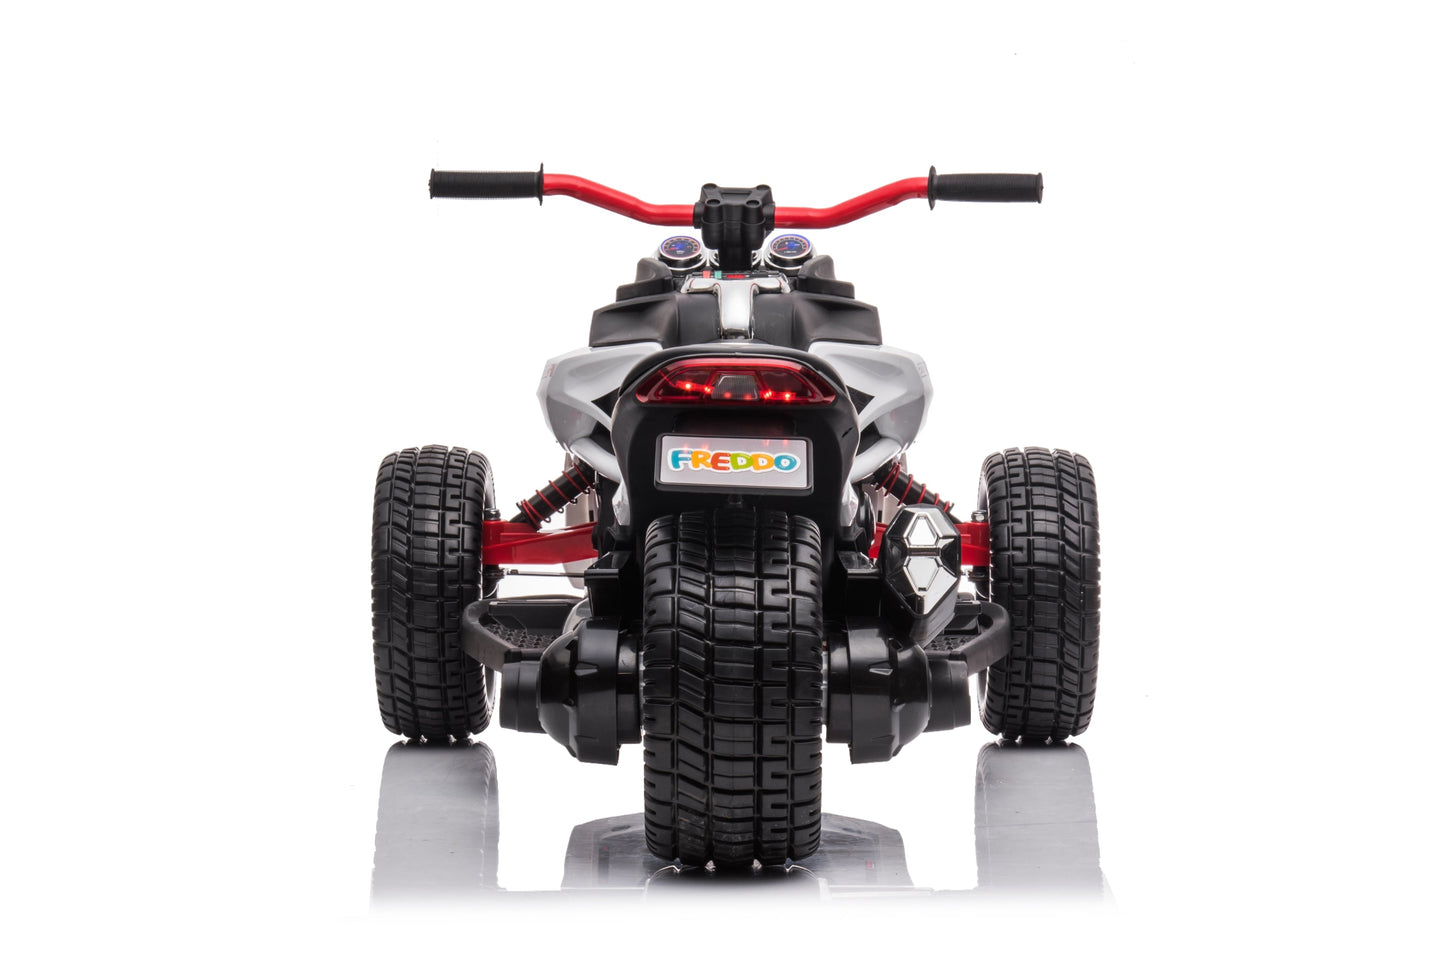 12V Freddo Spider 3 Wheel Motorcycle Trike 2 Seater